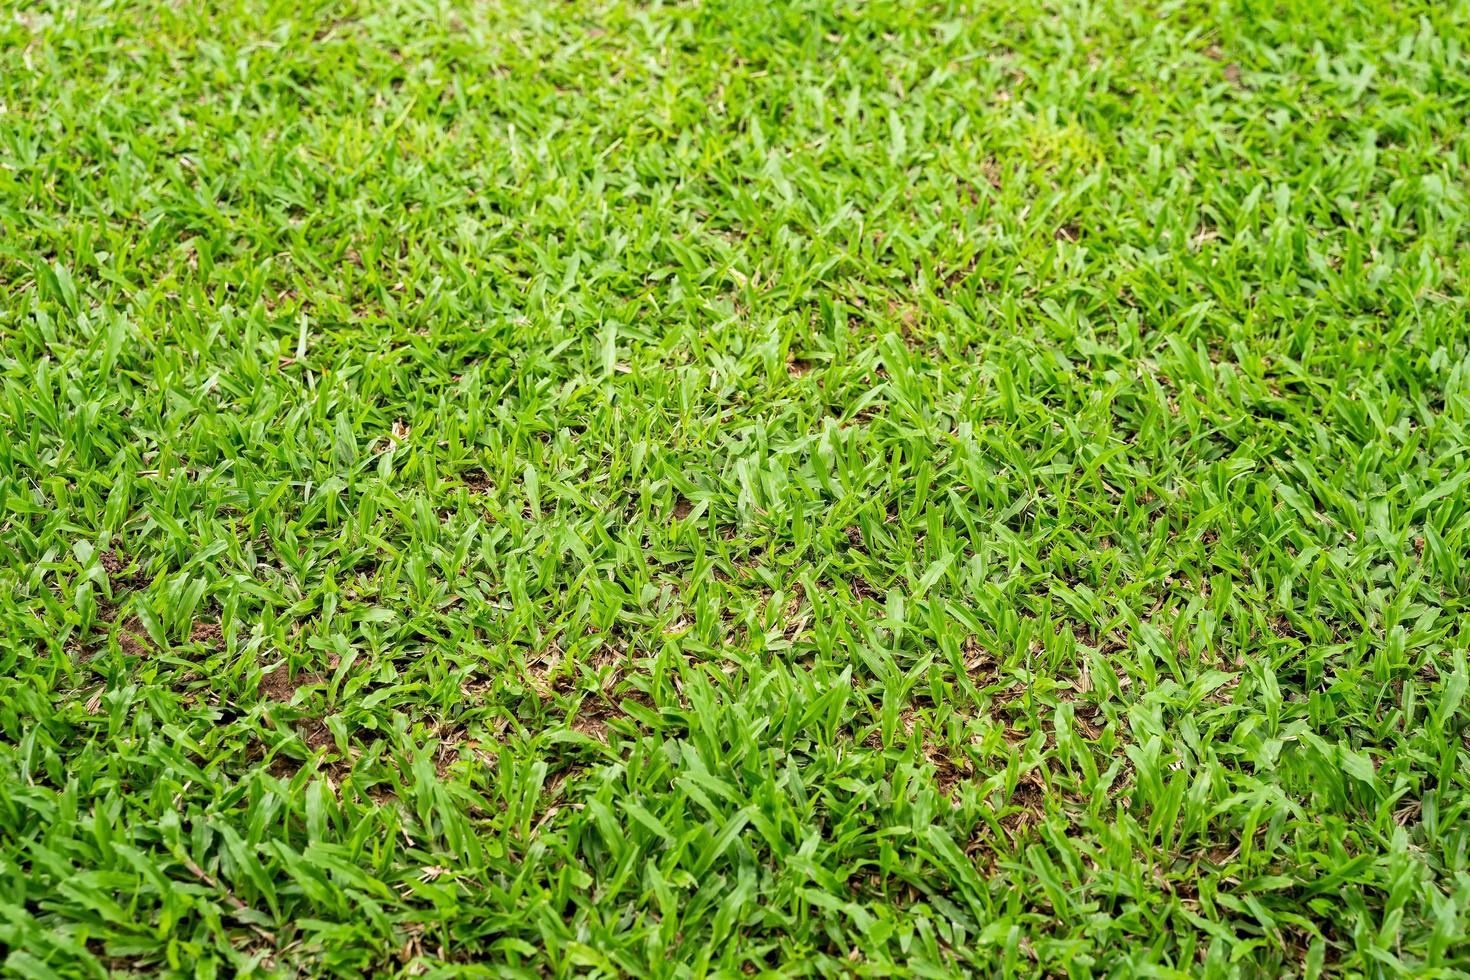 trama di erba verde per lo sfondo. modello di prato verde e sfondo texture. foto